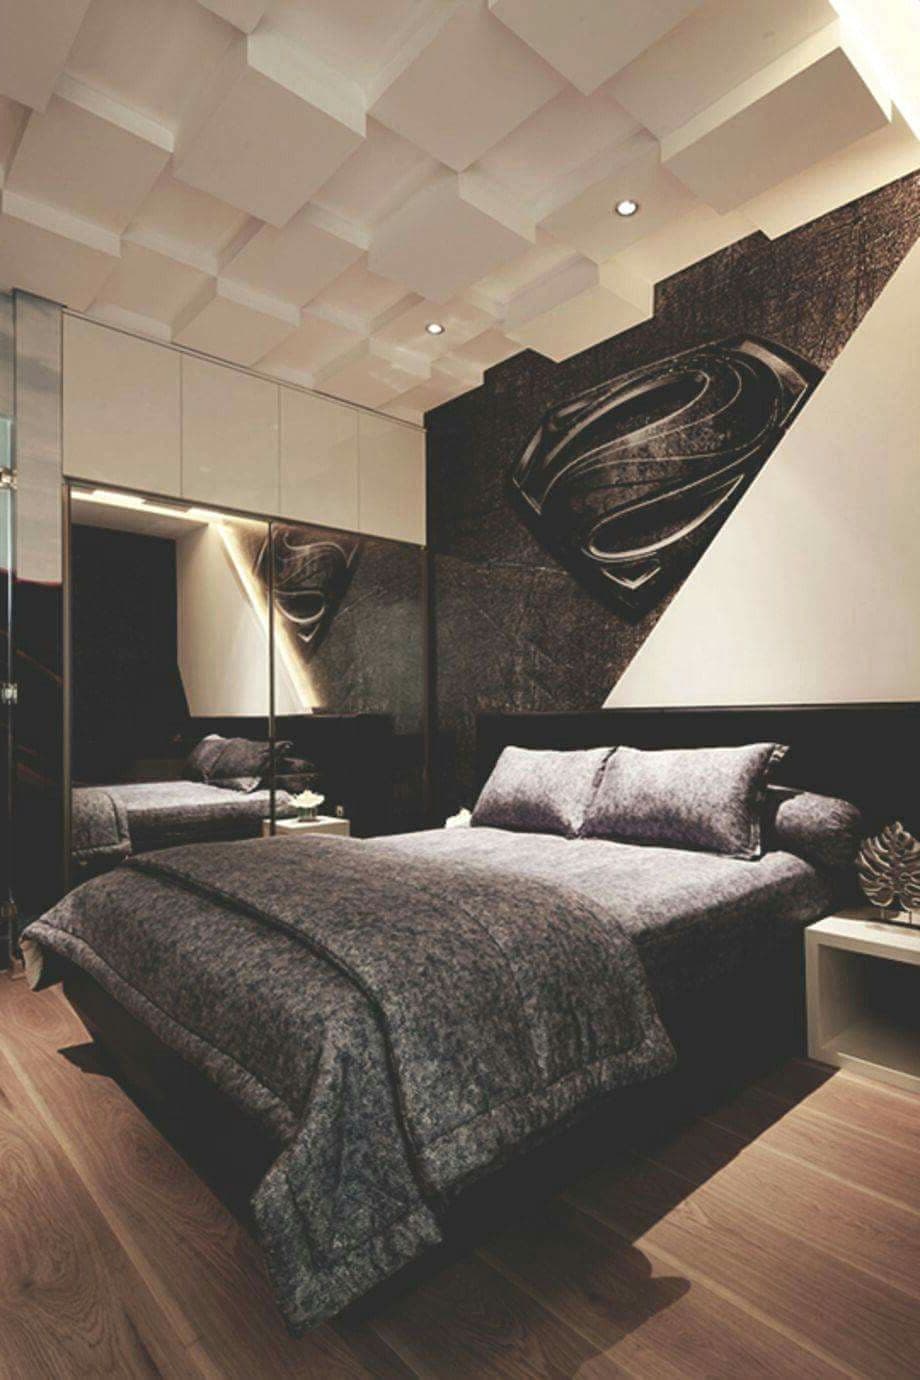 красивый дизайн потолка в спальне фото – 11